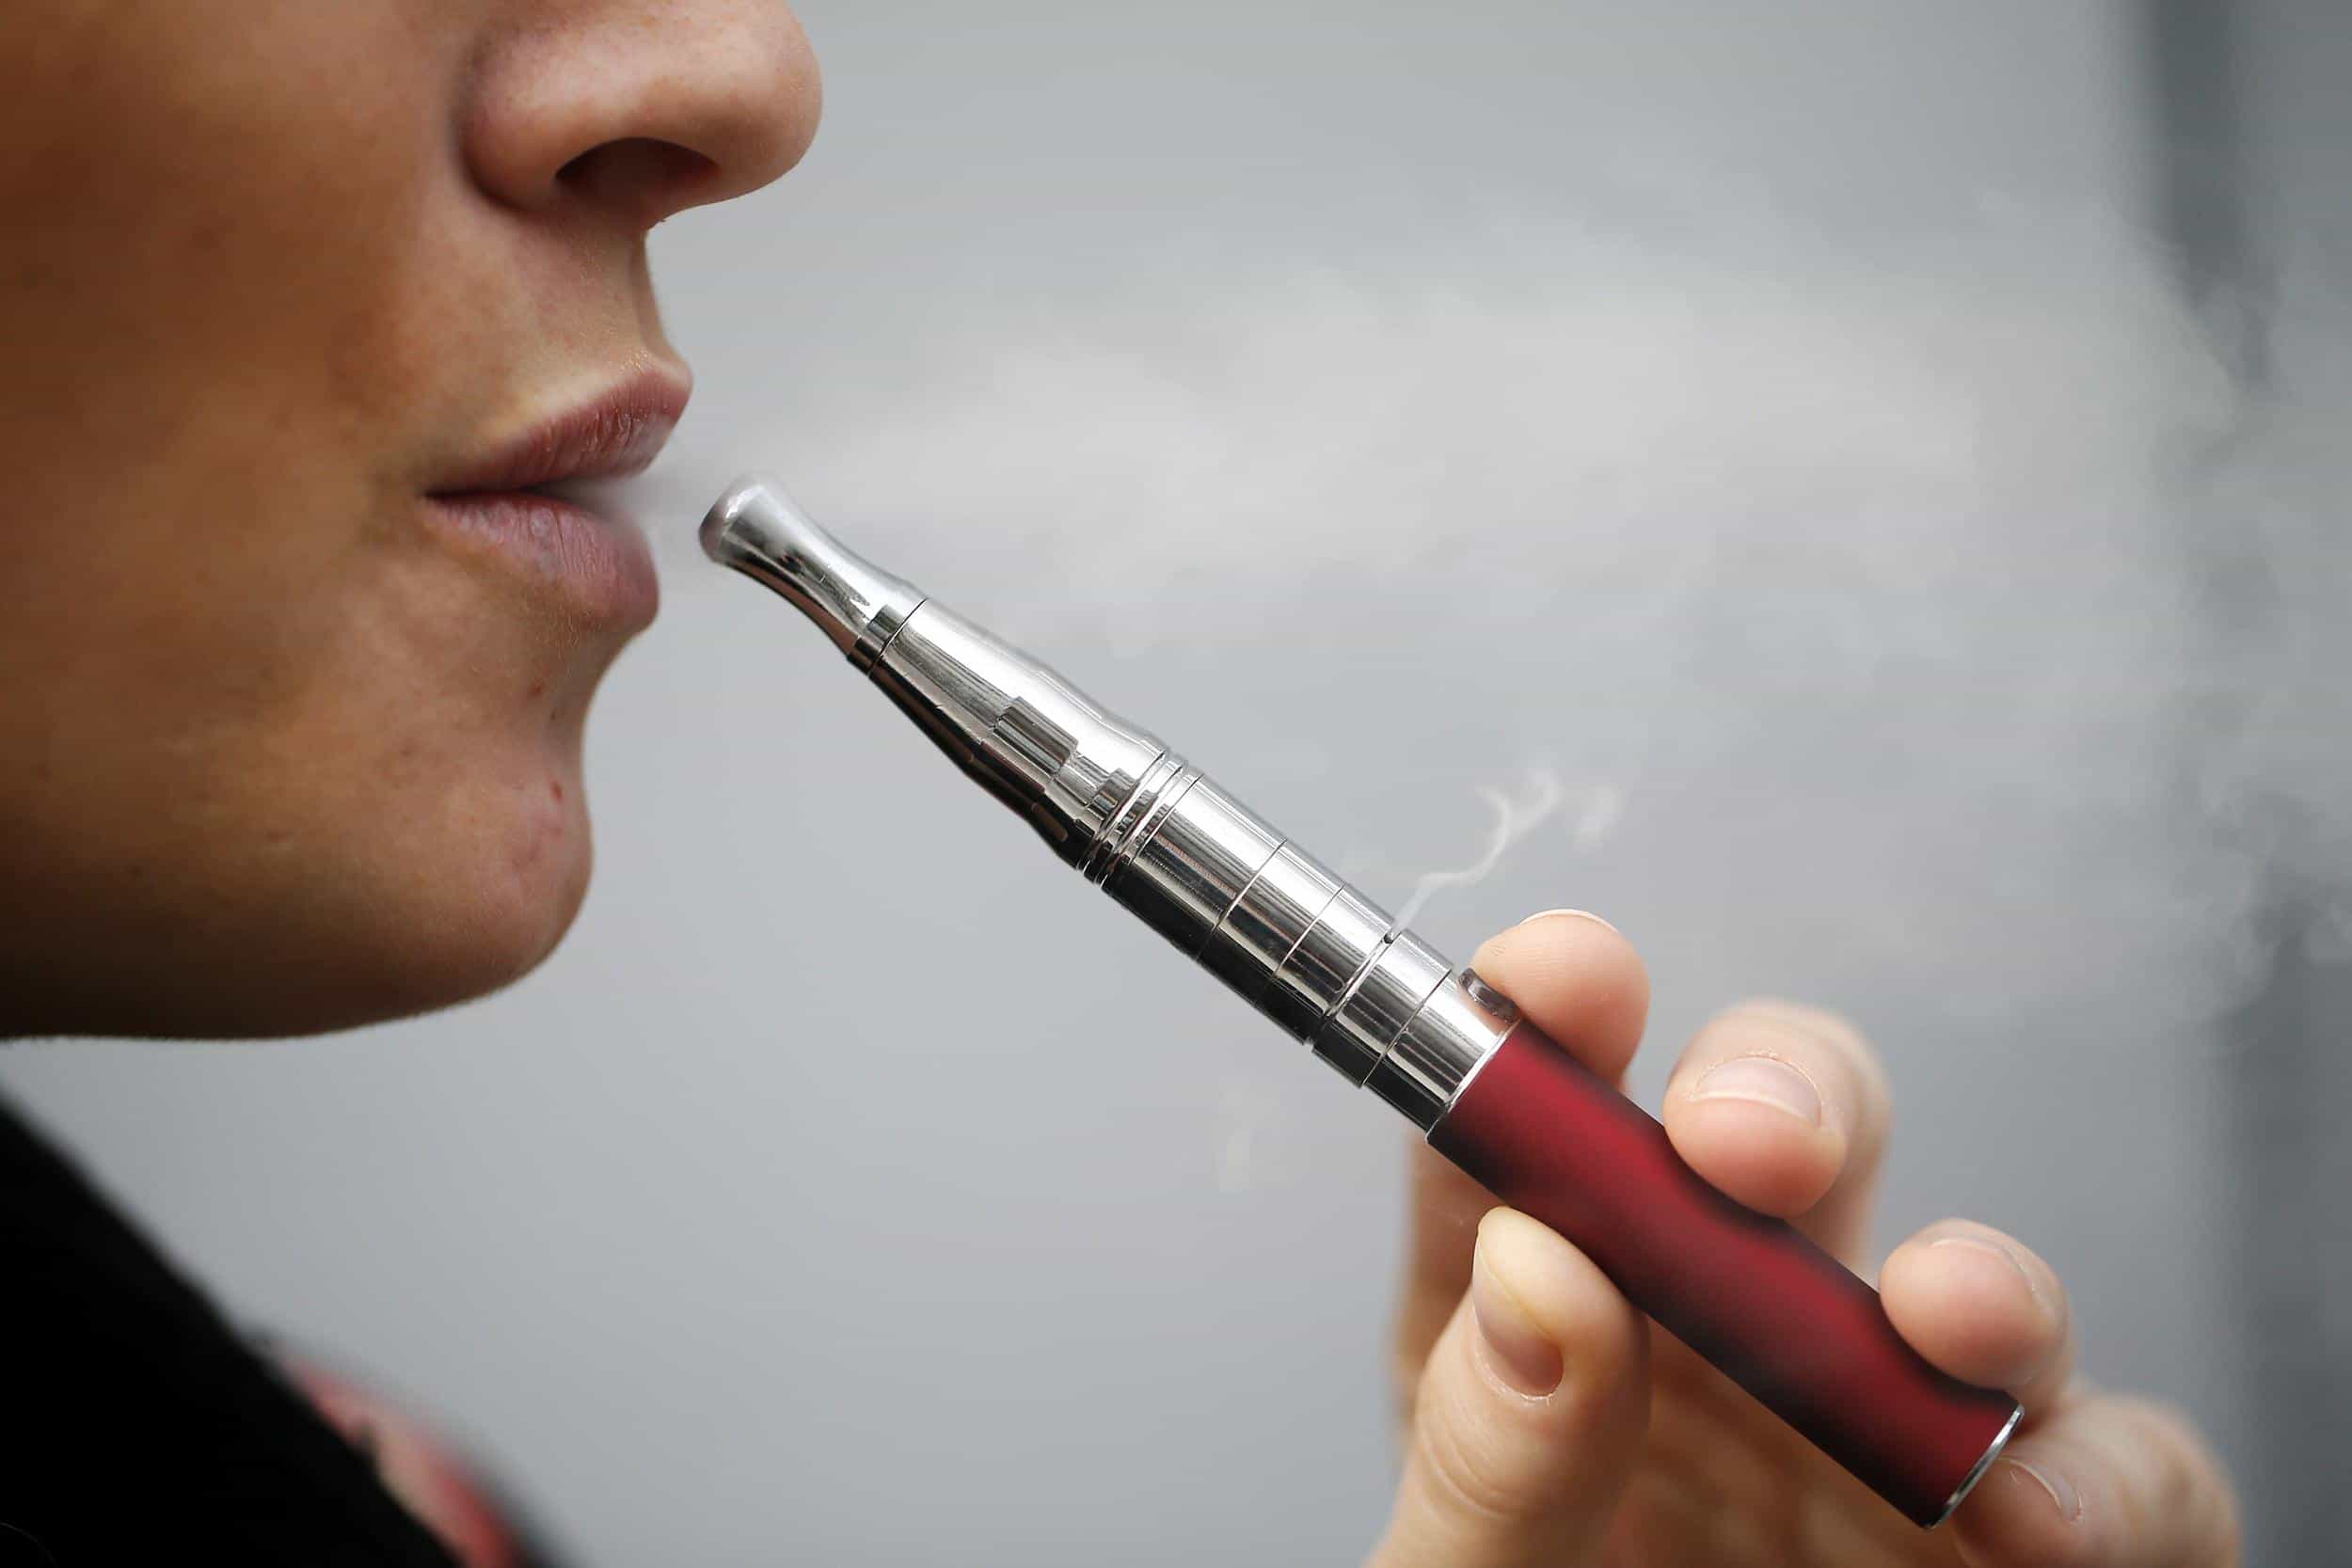 La cigarette électronique serait un grand danger avec la découverte de nouvelles substances cancérigènes